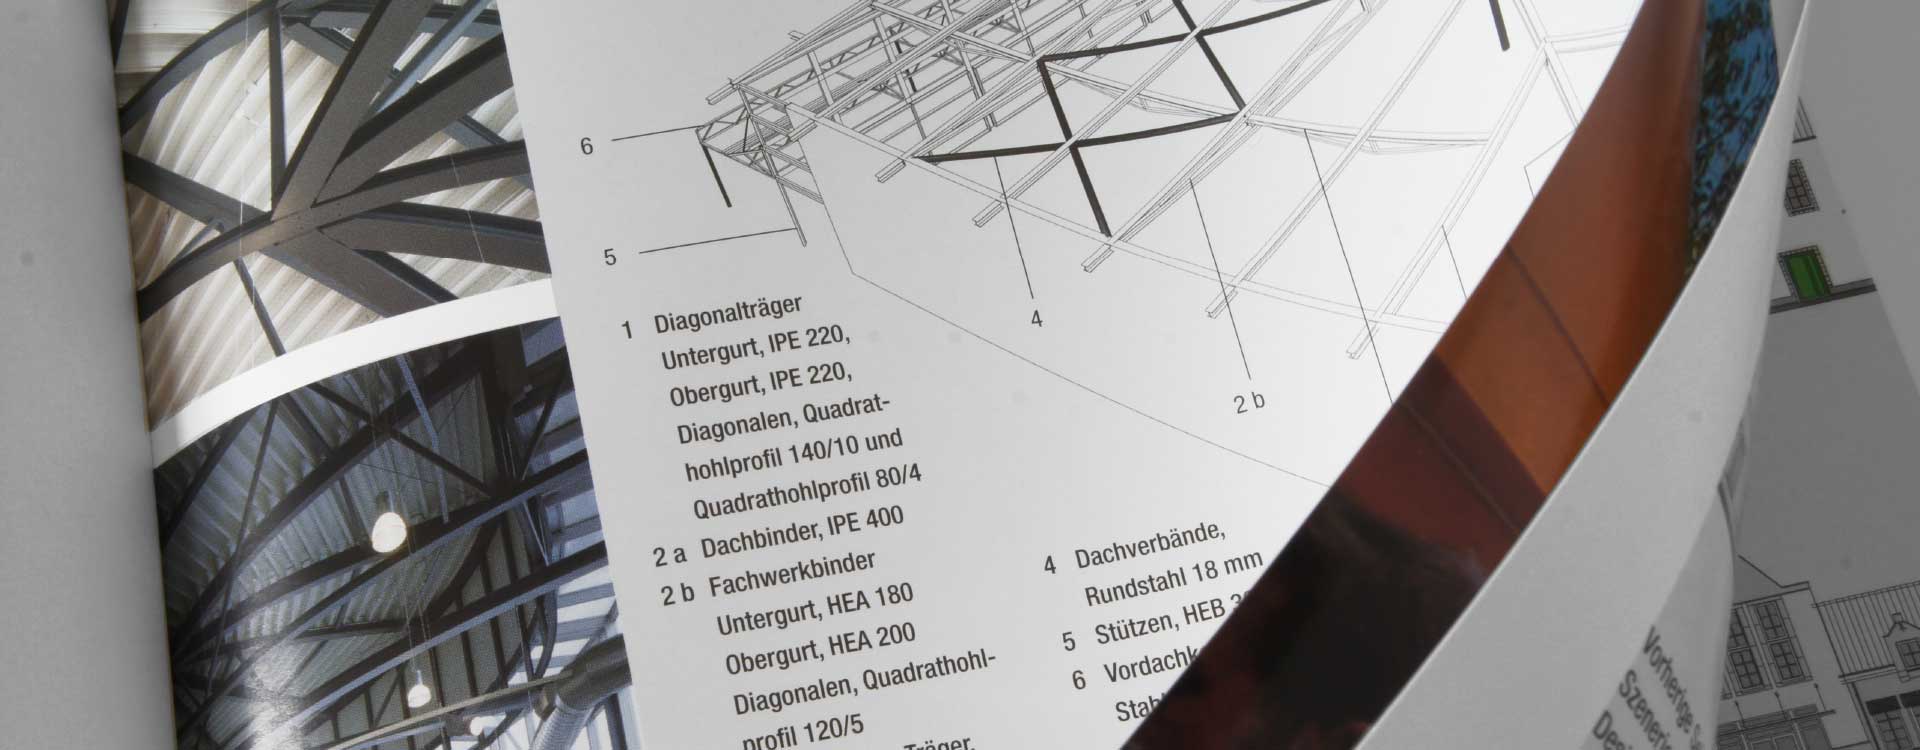 Broschüre »Einkaufserlebnis in Stahl – Designer Outlets« Stahl-Informations-Zentrum; Design: Kattrin Richter | Büro für Grafikdesign